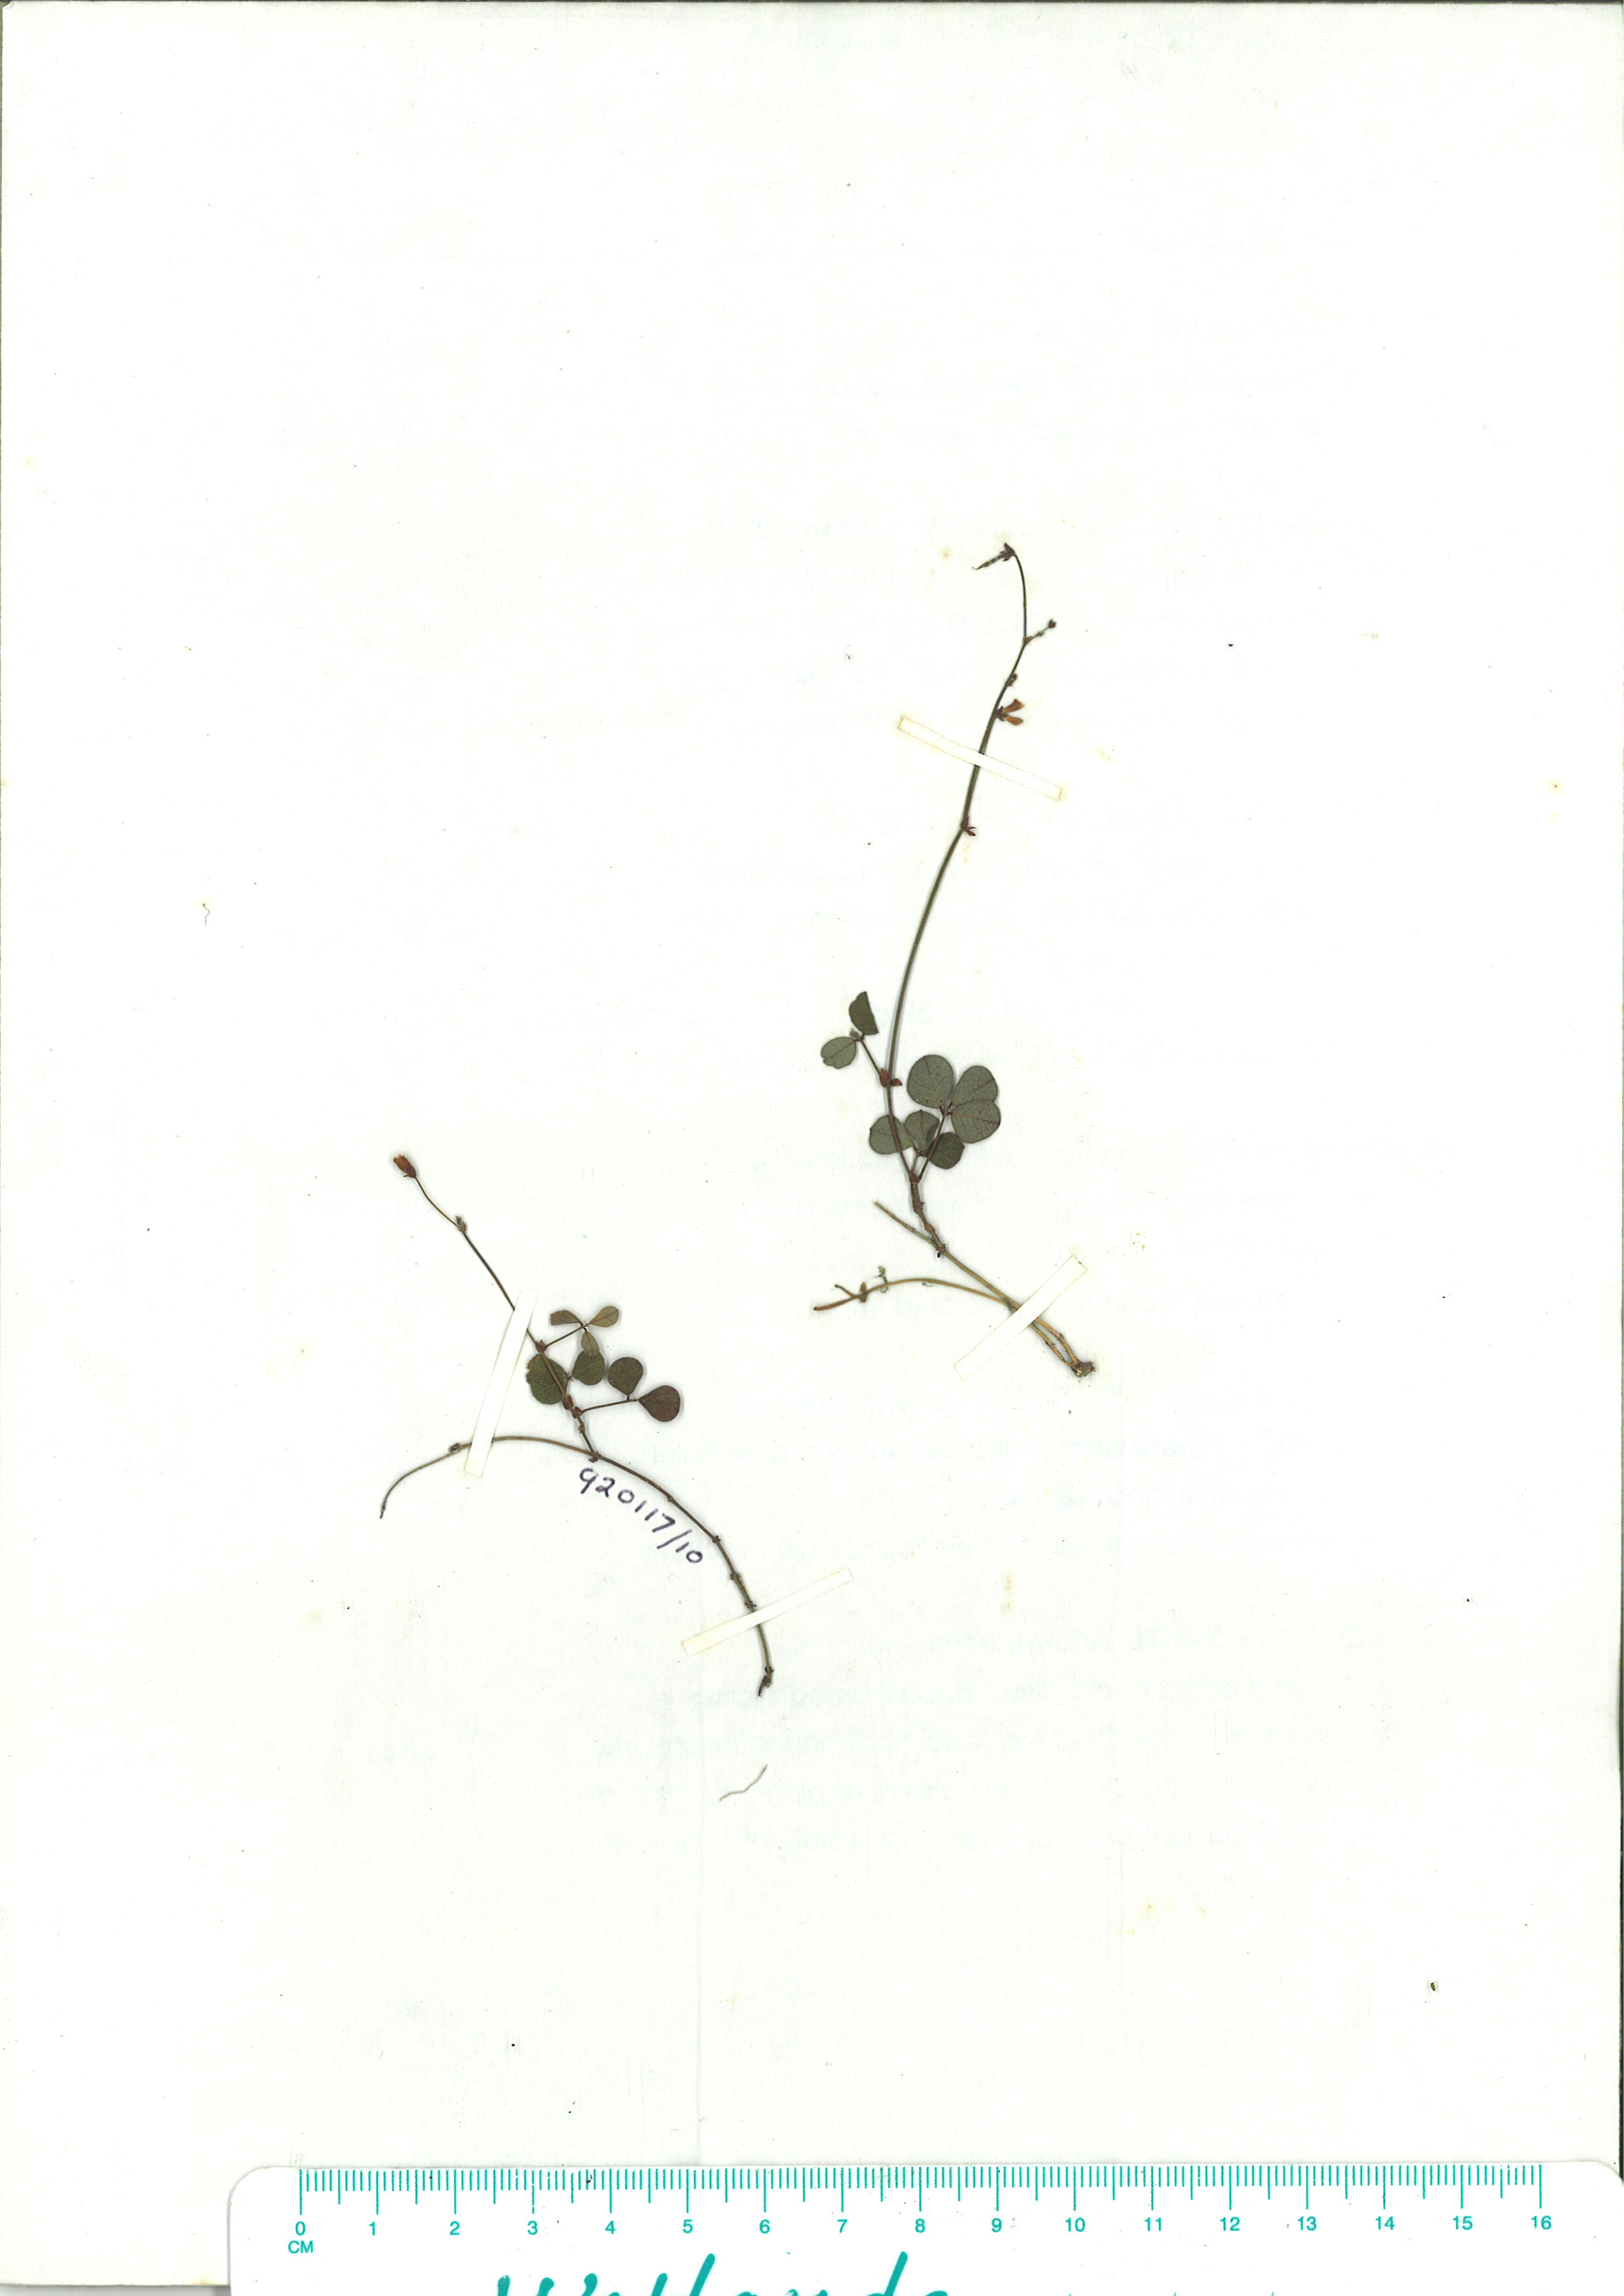 Scanned herbarium image of Desmodium gunnii